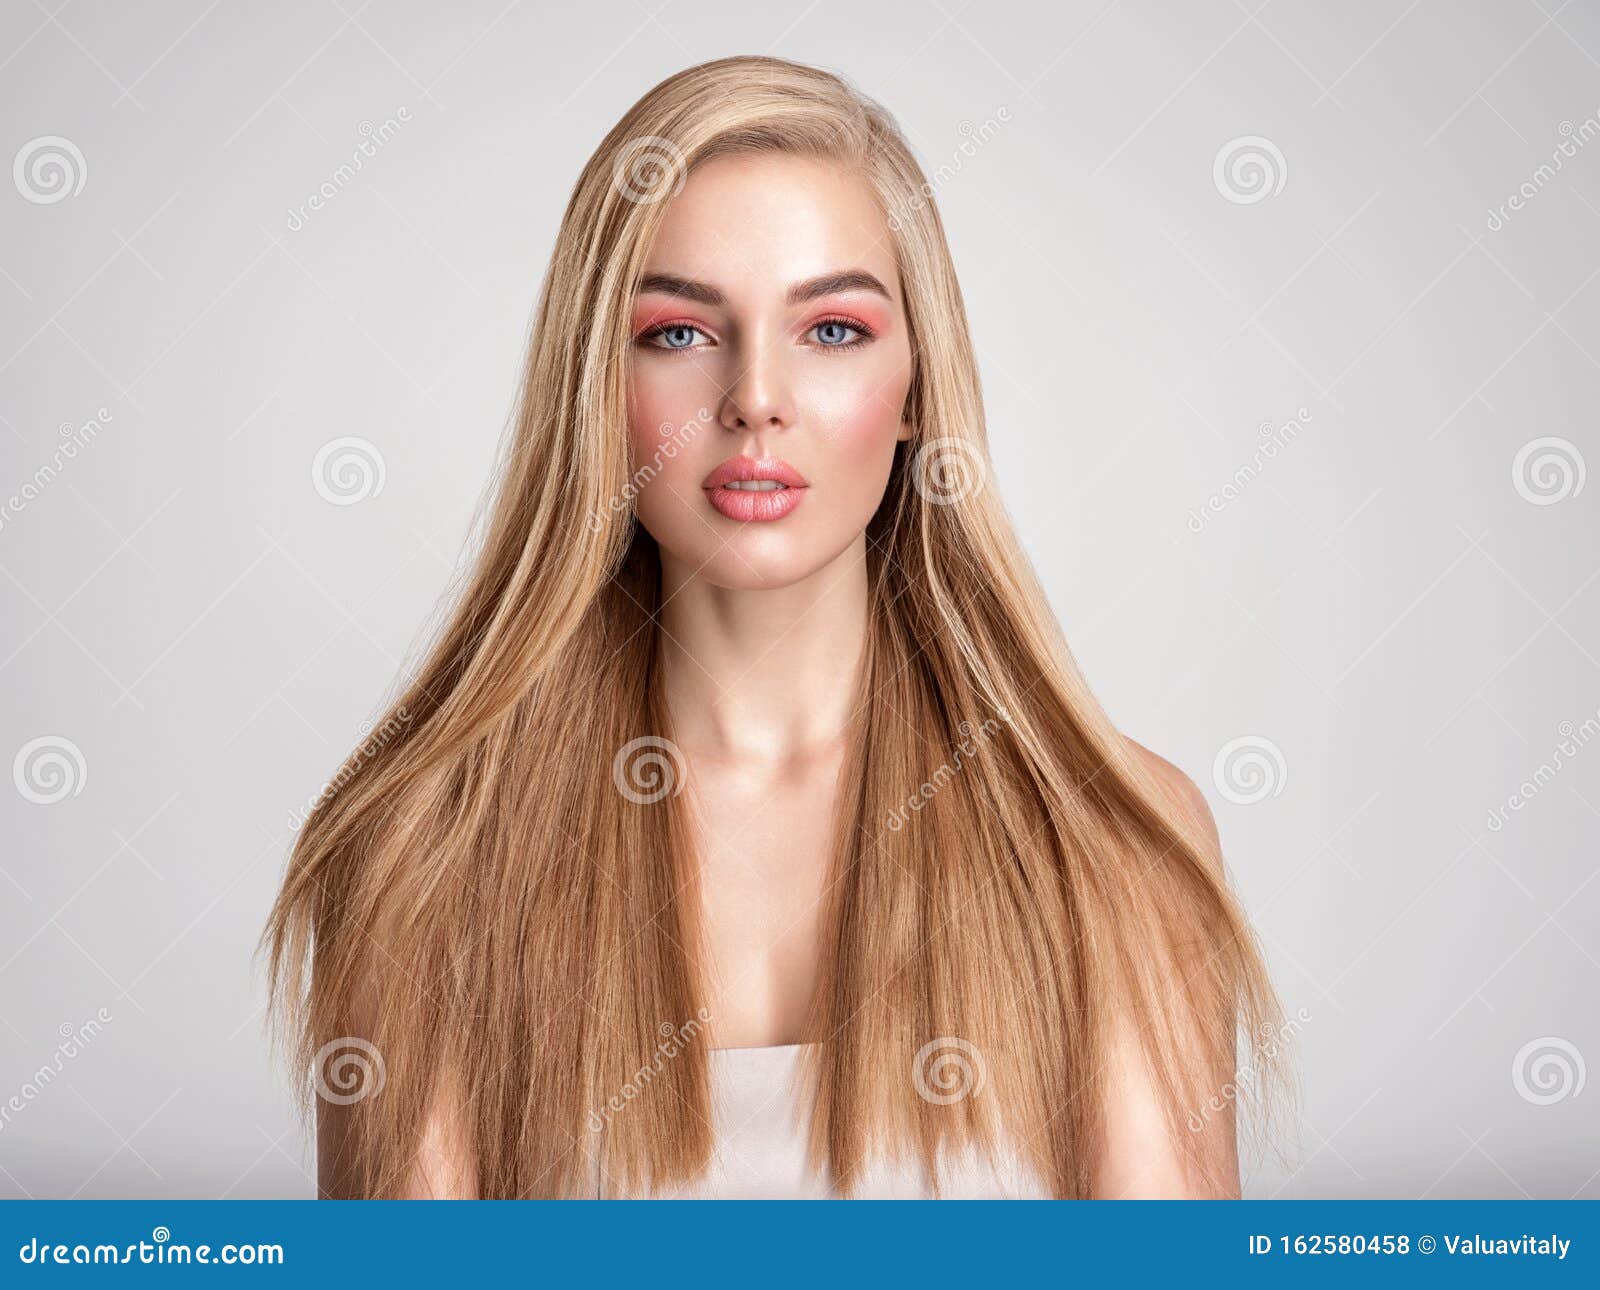 Blond hair - wide 6